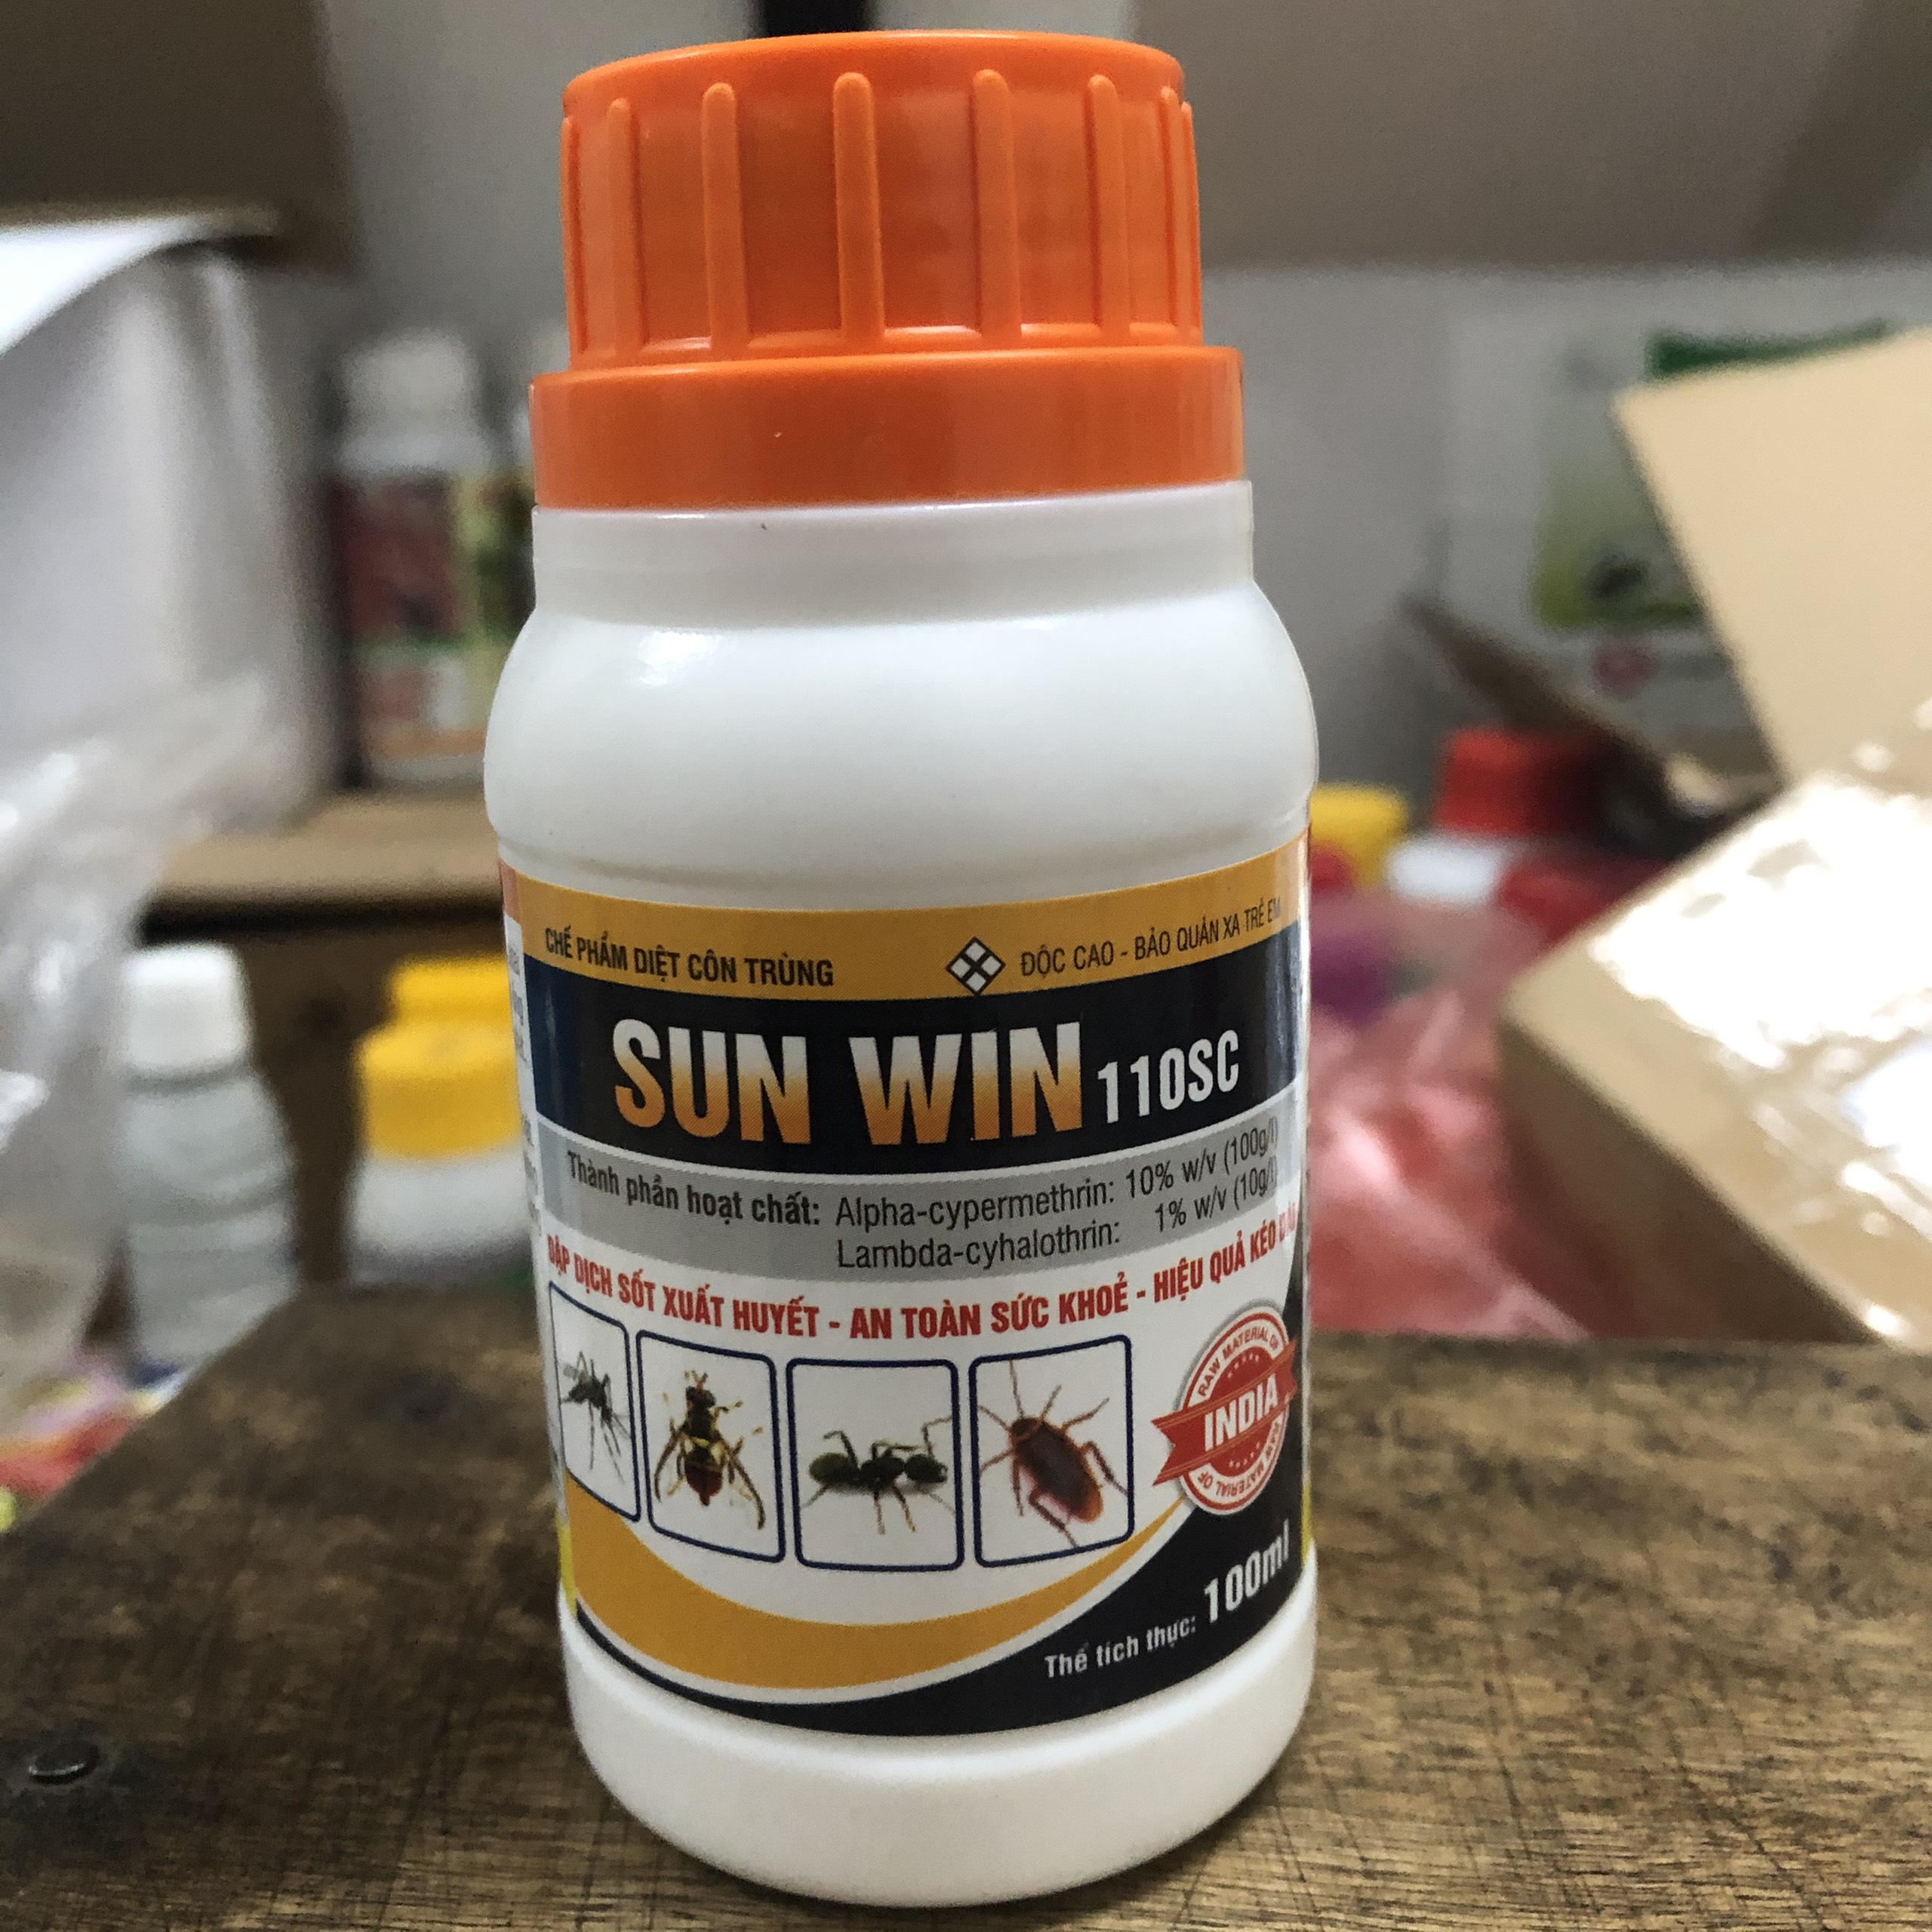 Chế phẩm diệt muỗi SUN WIN (Chai 100ml); diệt muỗi kiến gián cực hiệu quả, được cấp phép dùng trong y tế và gia dụng; diệt muỗi; diệt kiến ba khoang; diệt gián trong nhà